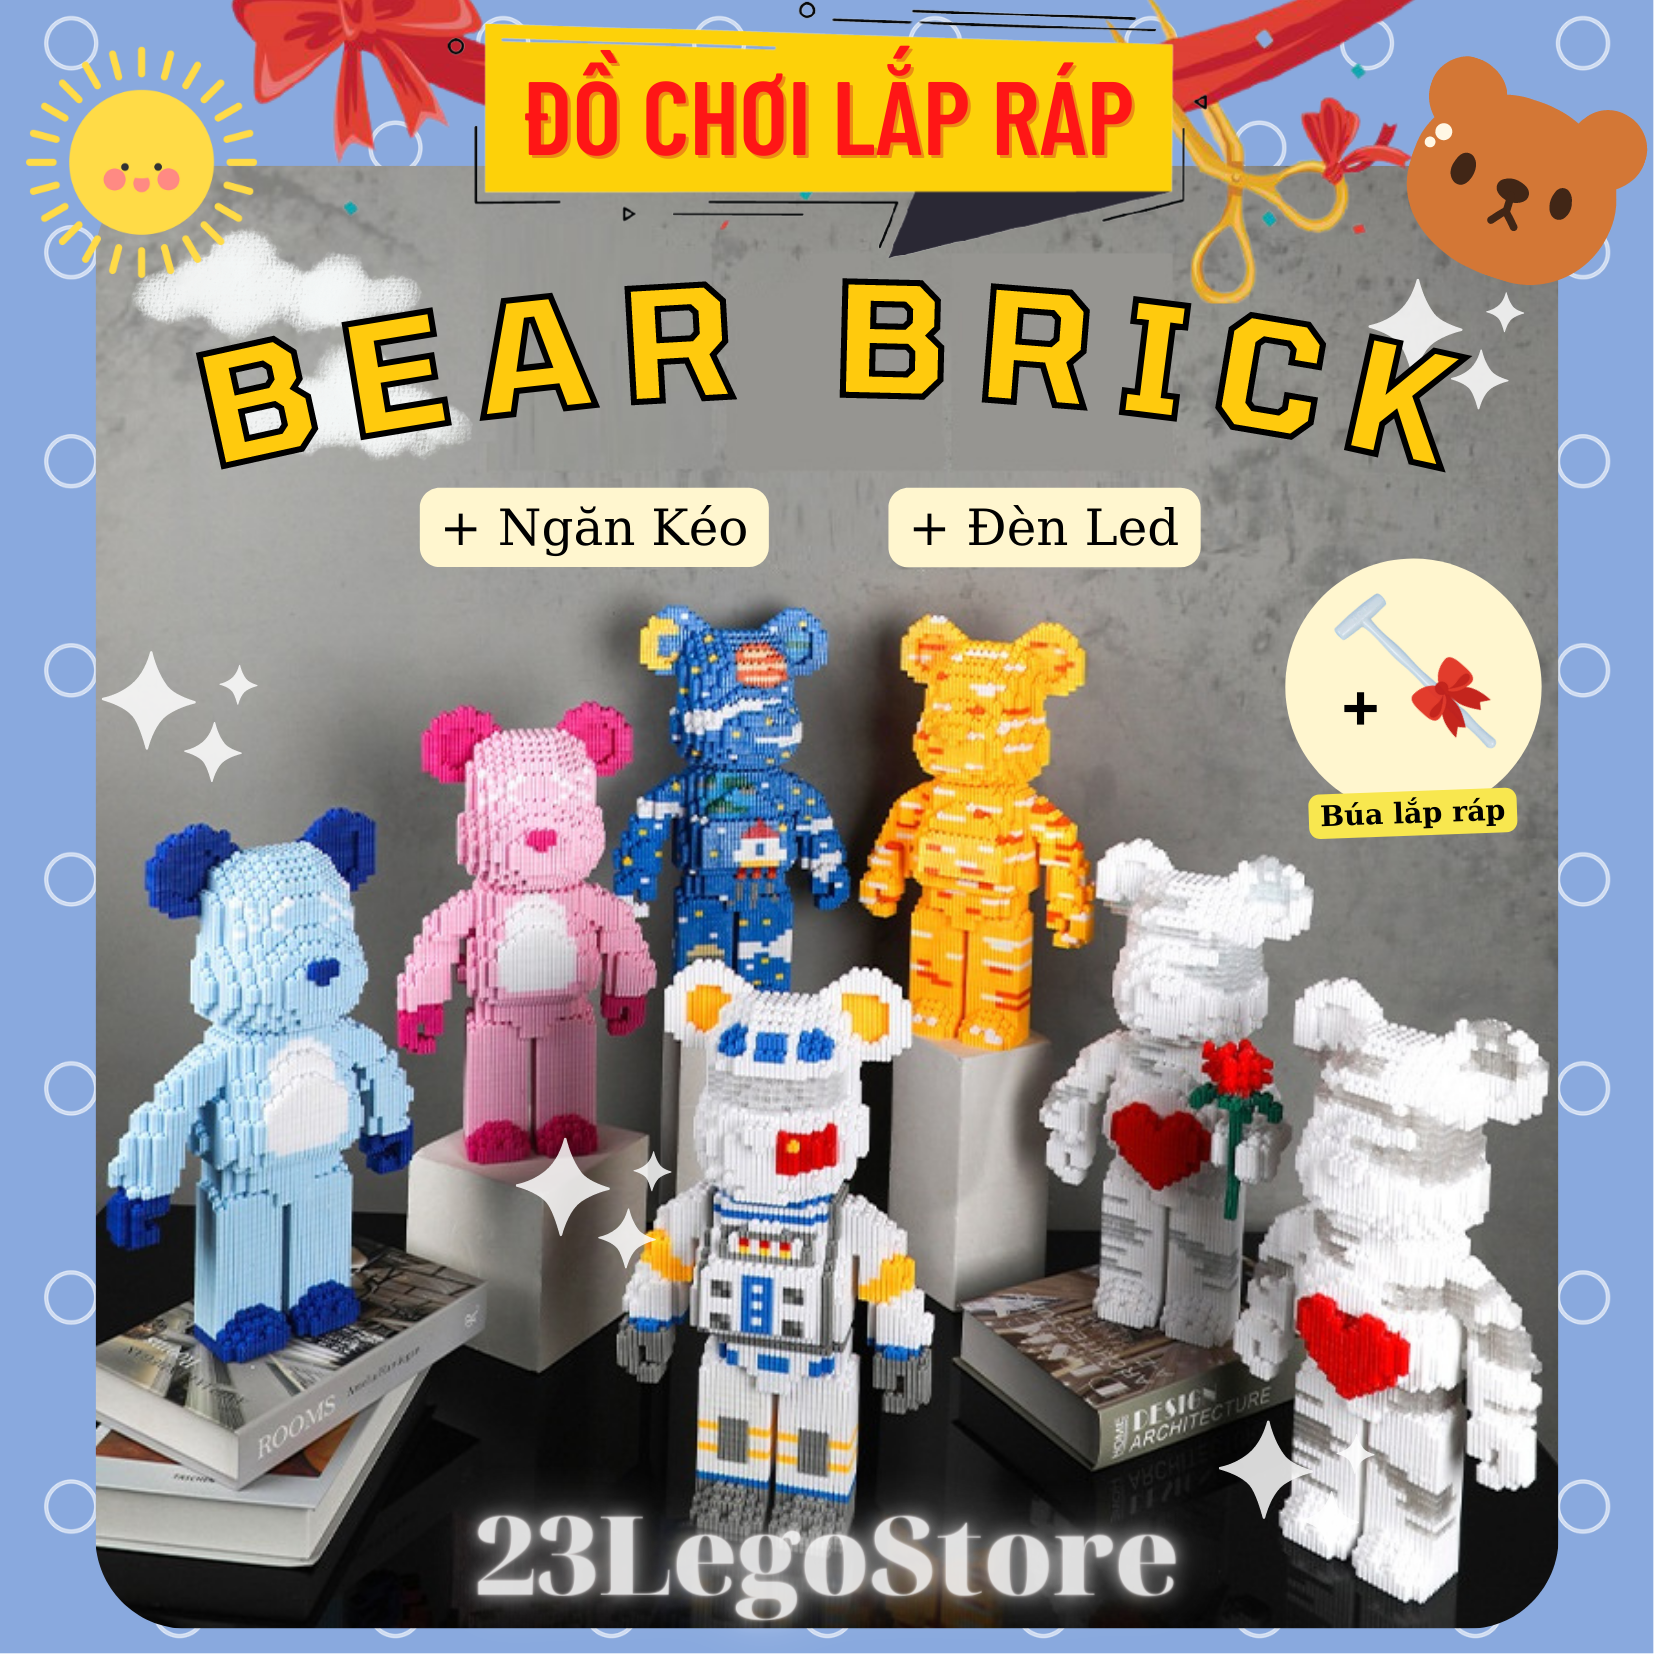 Bộ đồ chơi lắp ghép lego gấu BearBrick cỡ lớn 34cm (nhiều mẫu) tặng kèm búa lắp ráp, Bộ đồ chơi lắp ráp gấu BearBrick